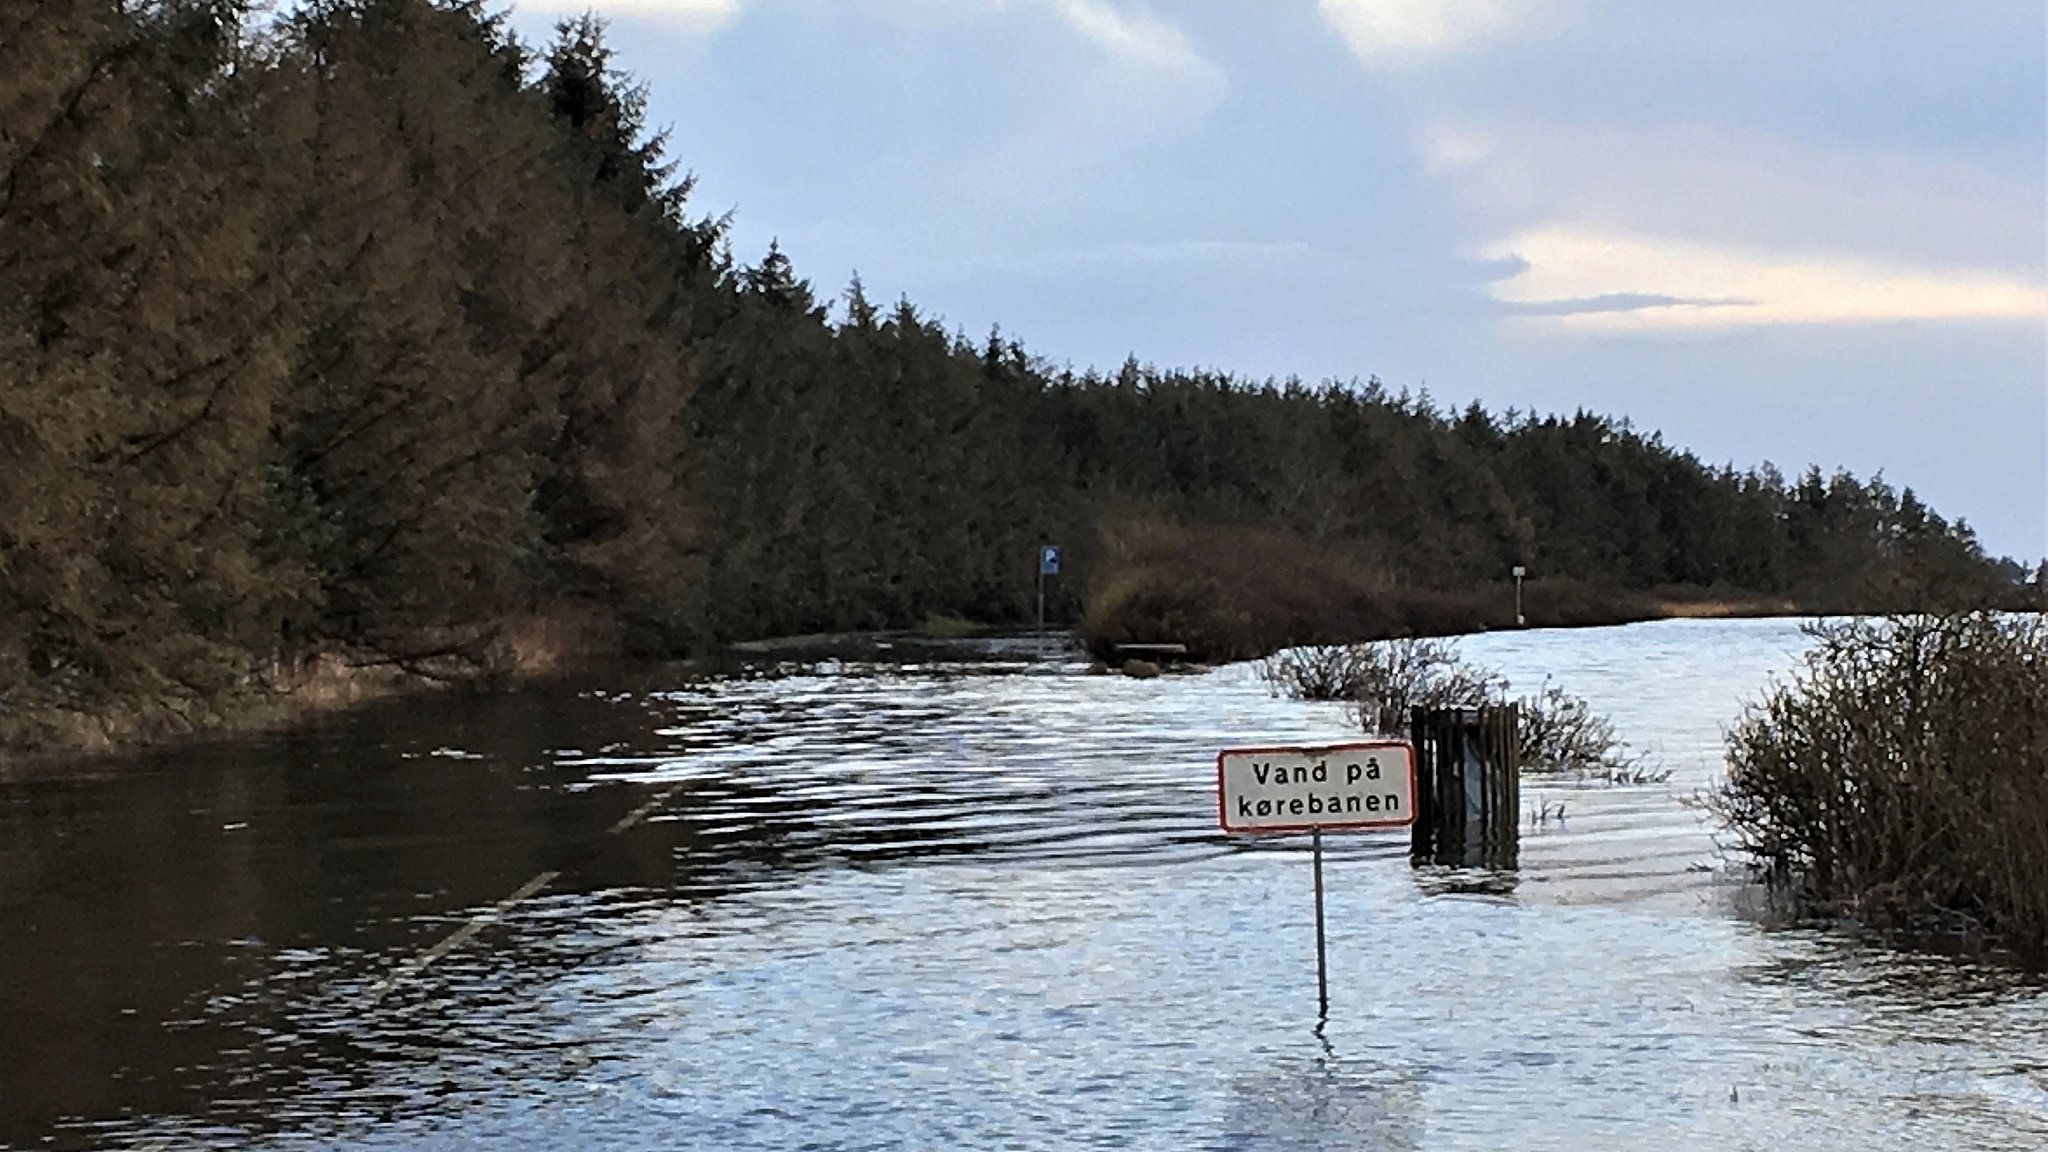 Høj vandstand udfordrer færgelejer: Vejen Venø Færgen står under vand | MIDTVEST